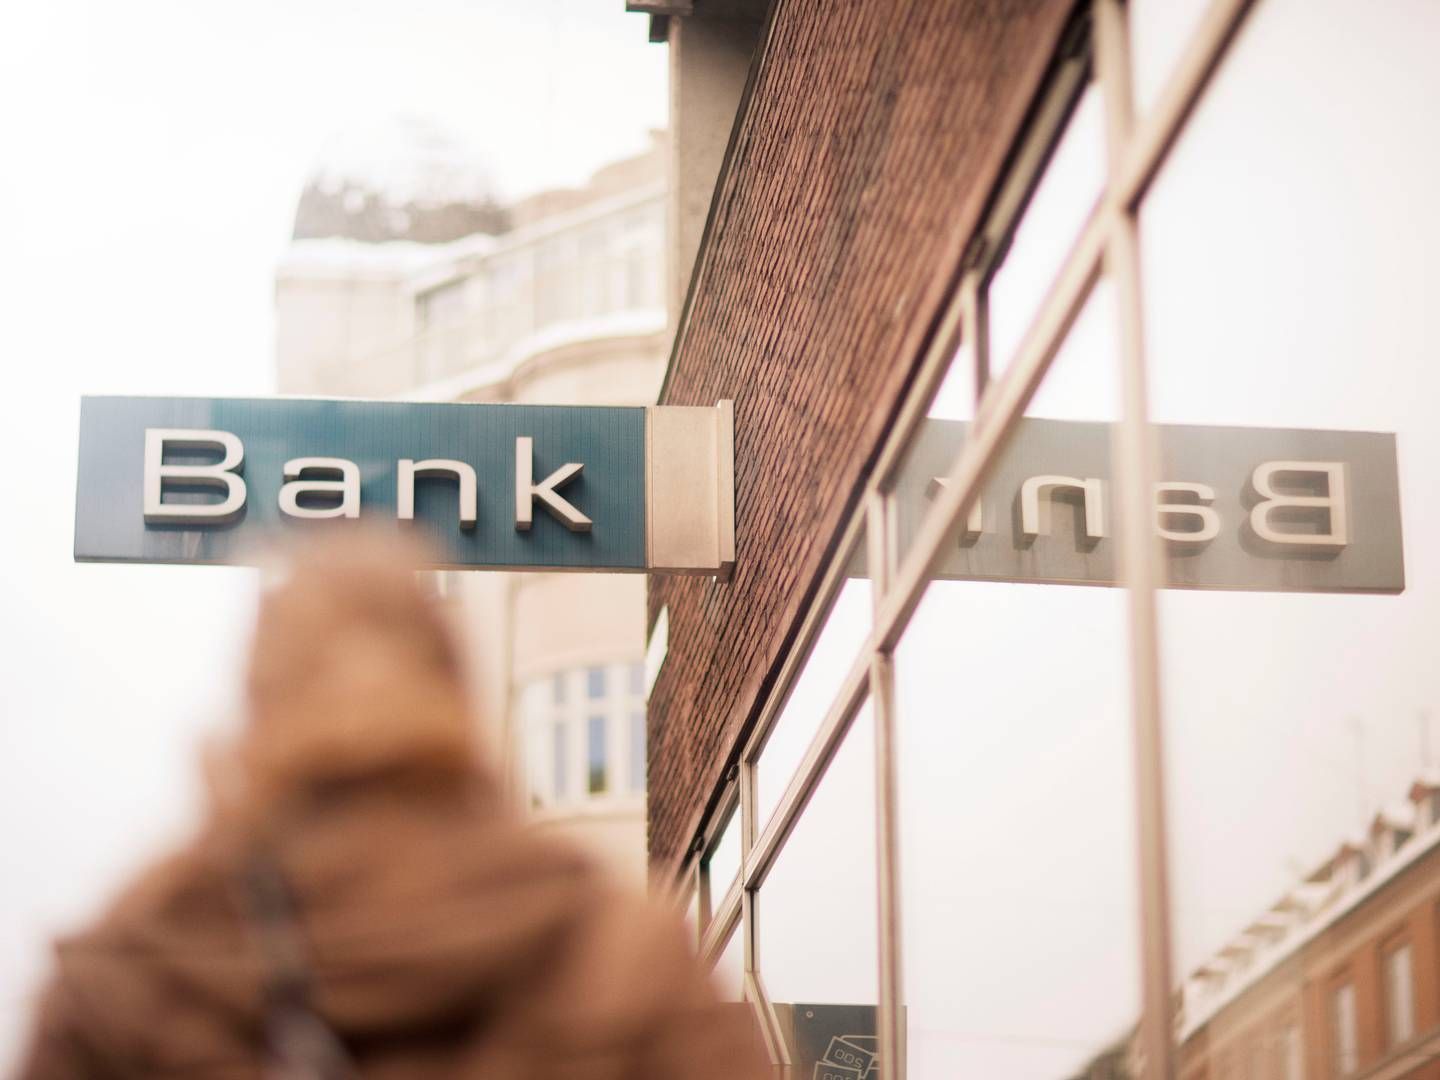 Omkostninger til løn er faldet markant i Danske Bank som følge af, at banken har sagt farvel til hundredevis af medarbejdere. | Foto: Pr/ Danske Bank